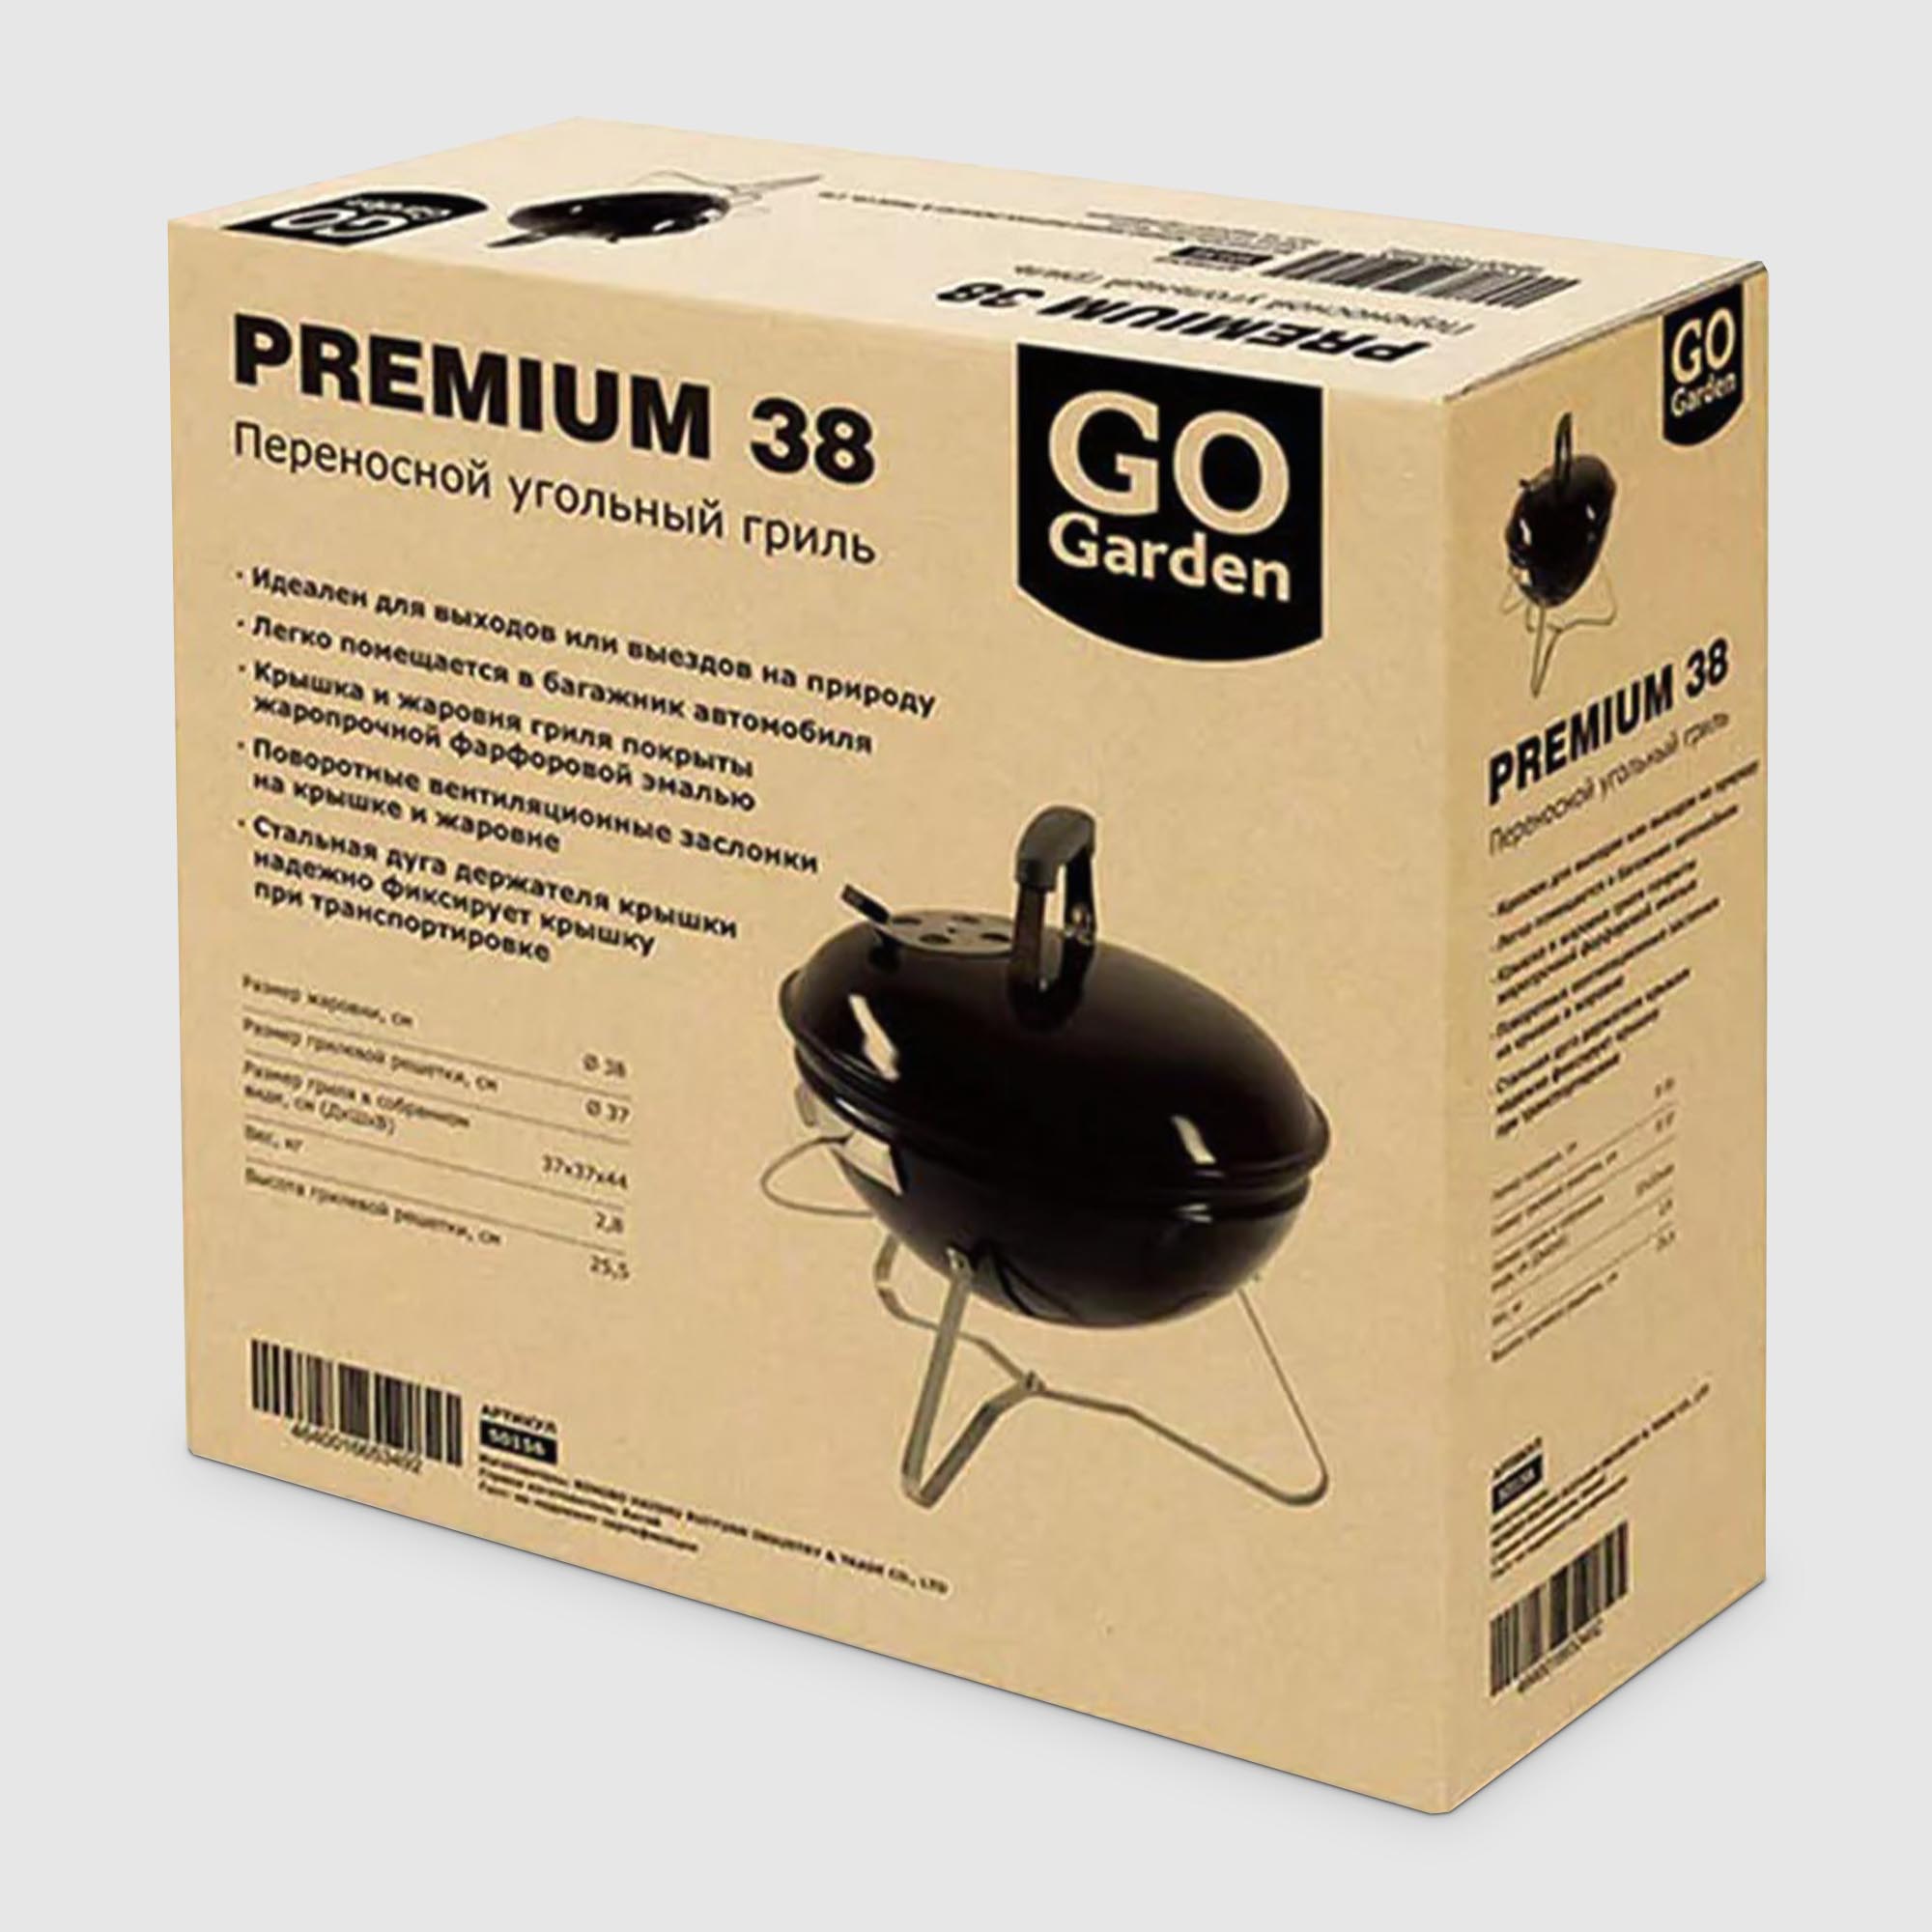 Гриль Gogarden Premium 38, цвет чёрный, размер 37 см - фото 6